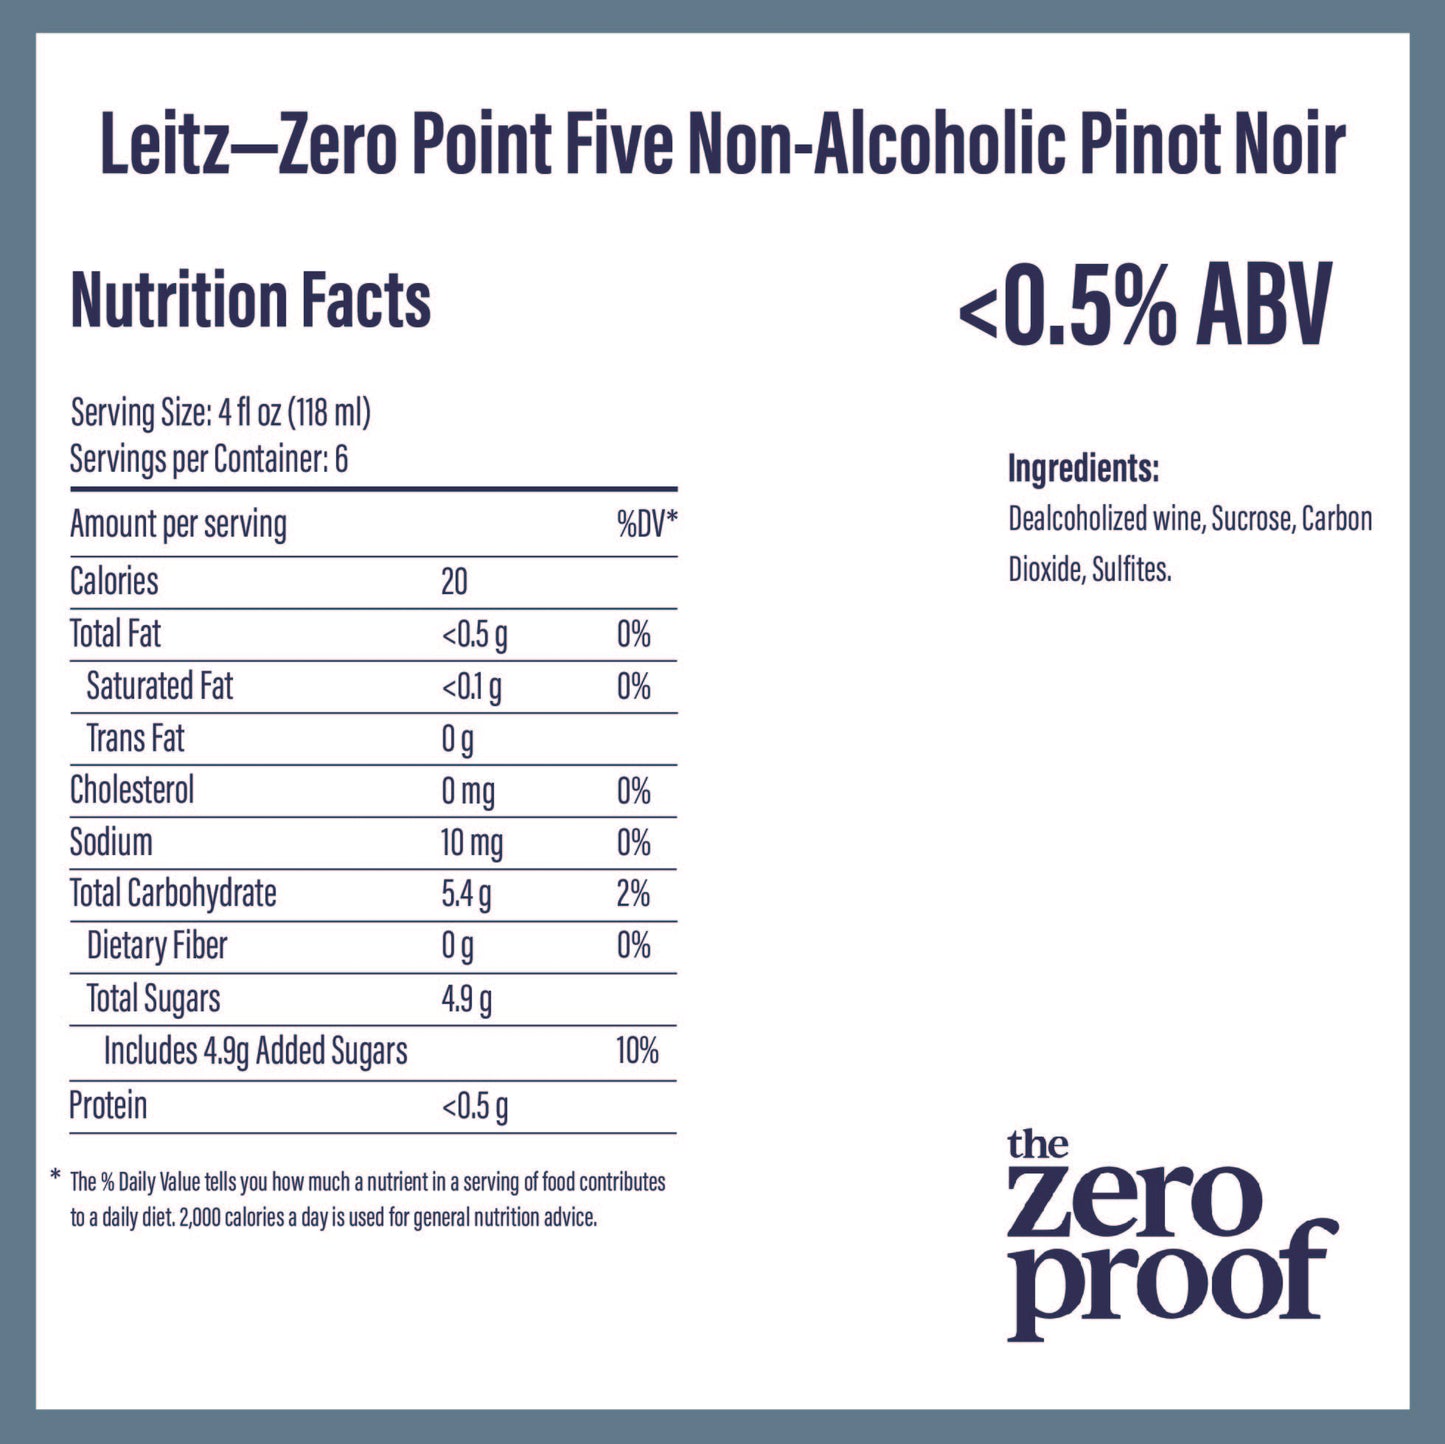 Leitz - Zero Point Five Non-Alcoholic Pinot Noir